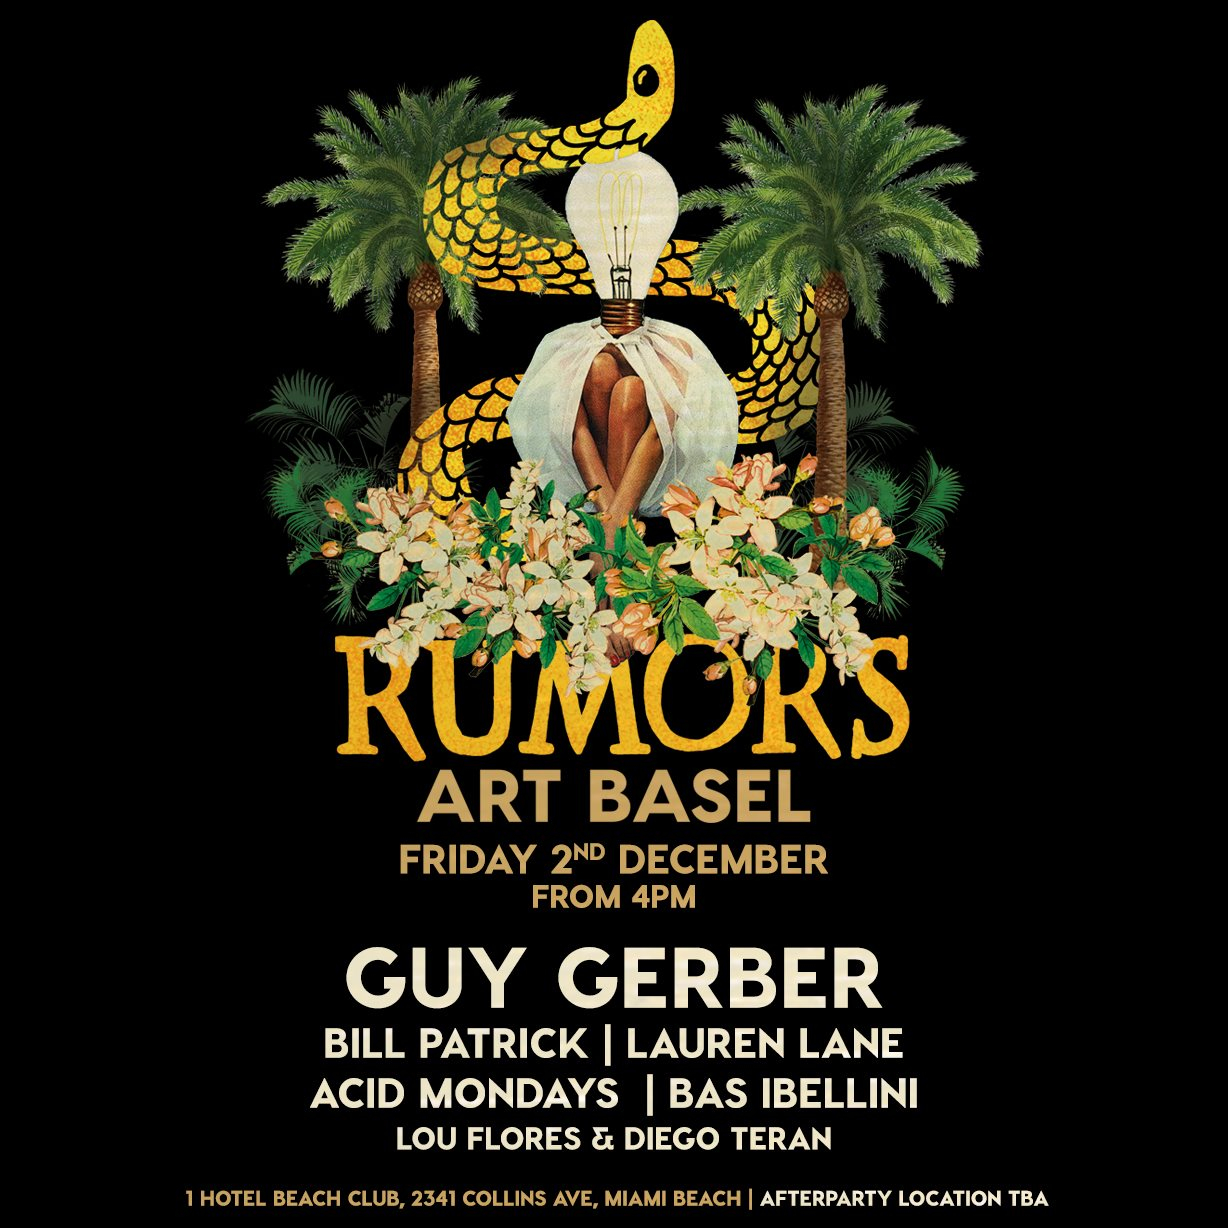 Rumors Art Basel 2016 - Flyer front